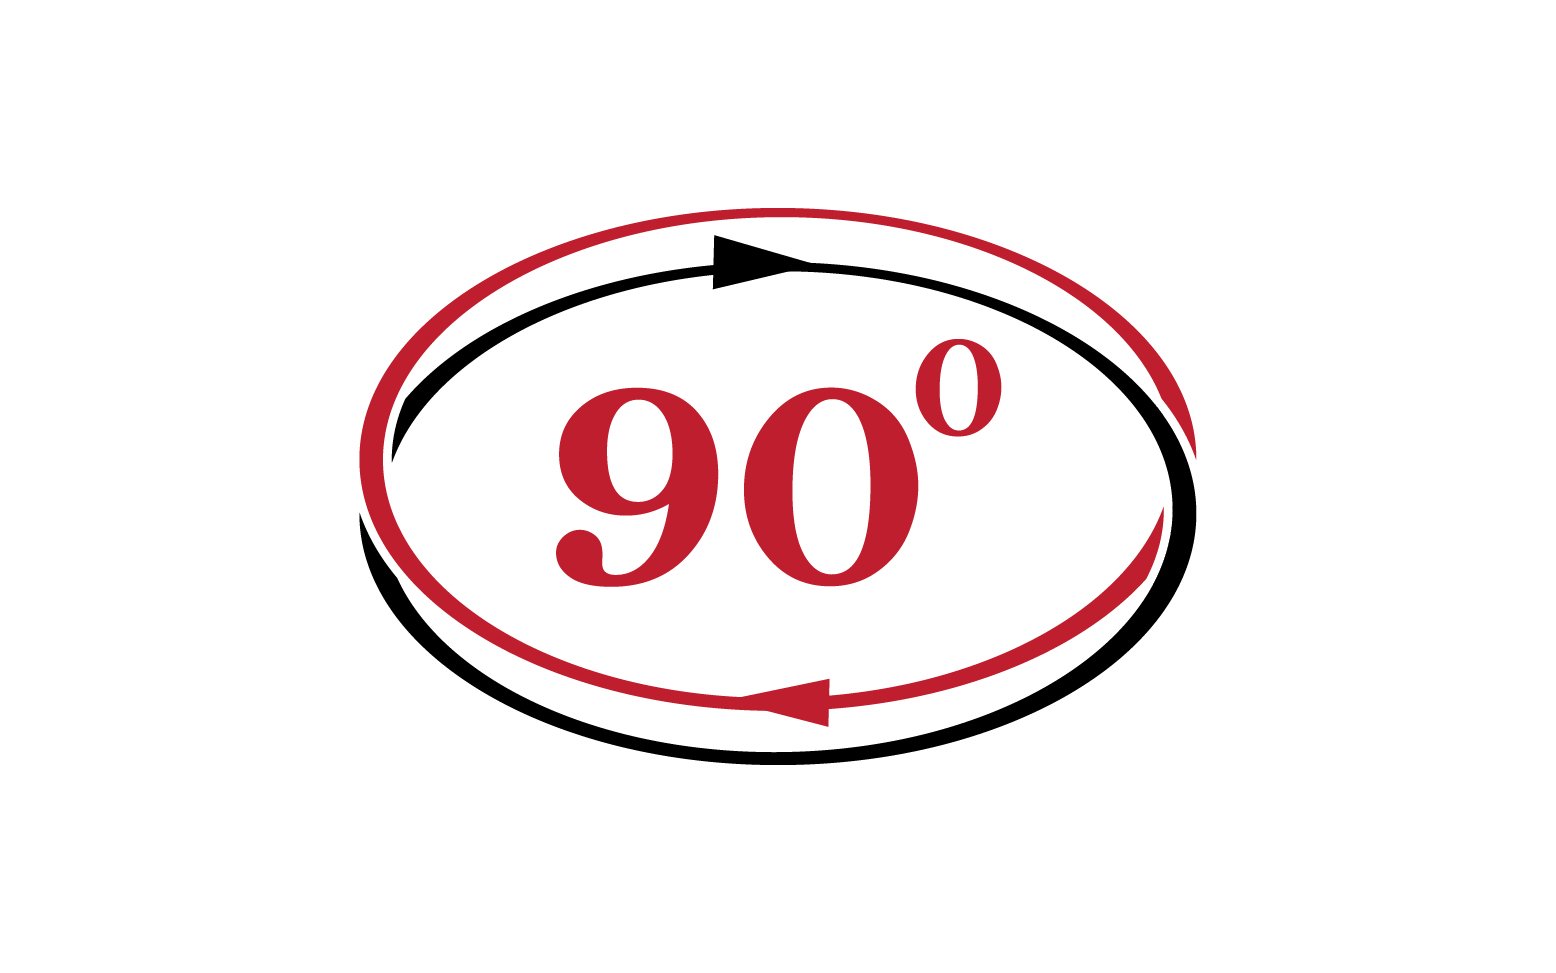 90 degree angle rotation icon symbol logo v20